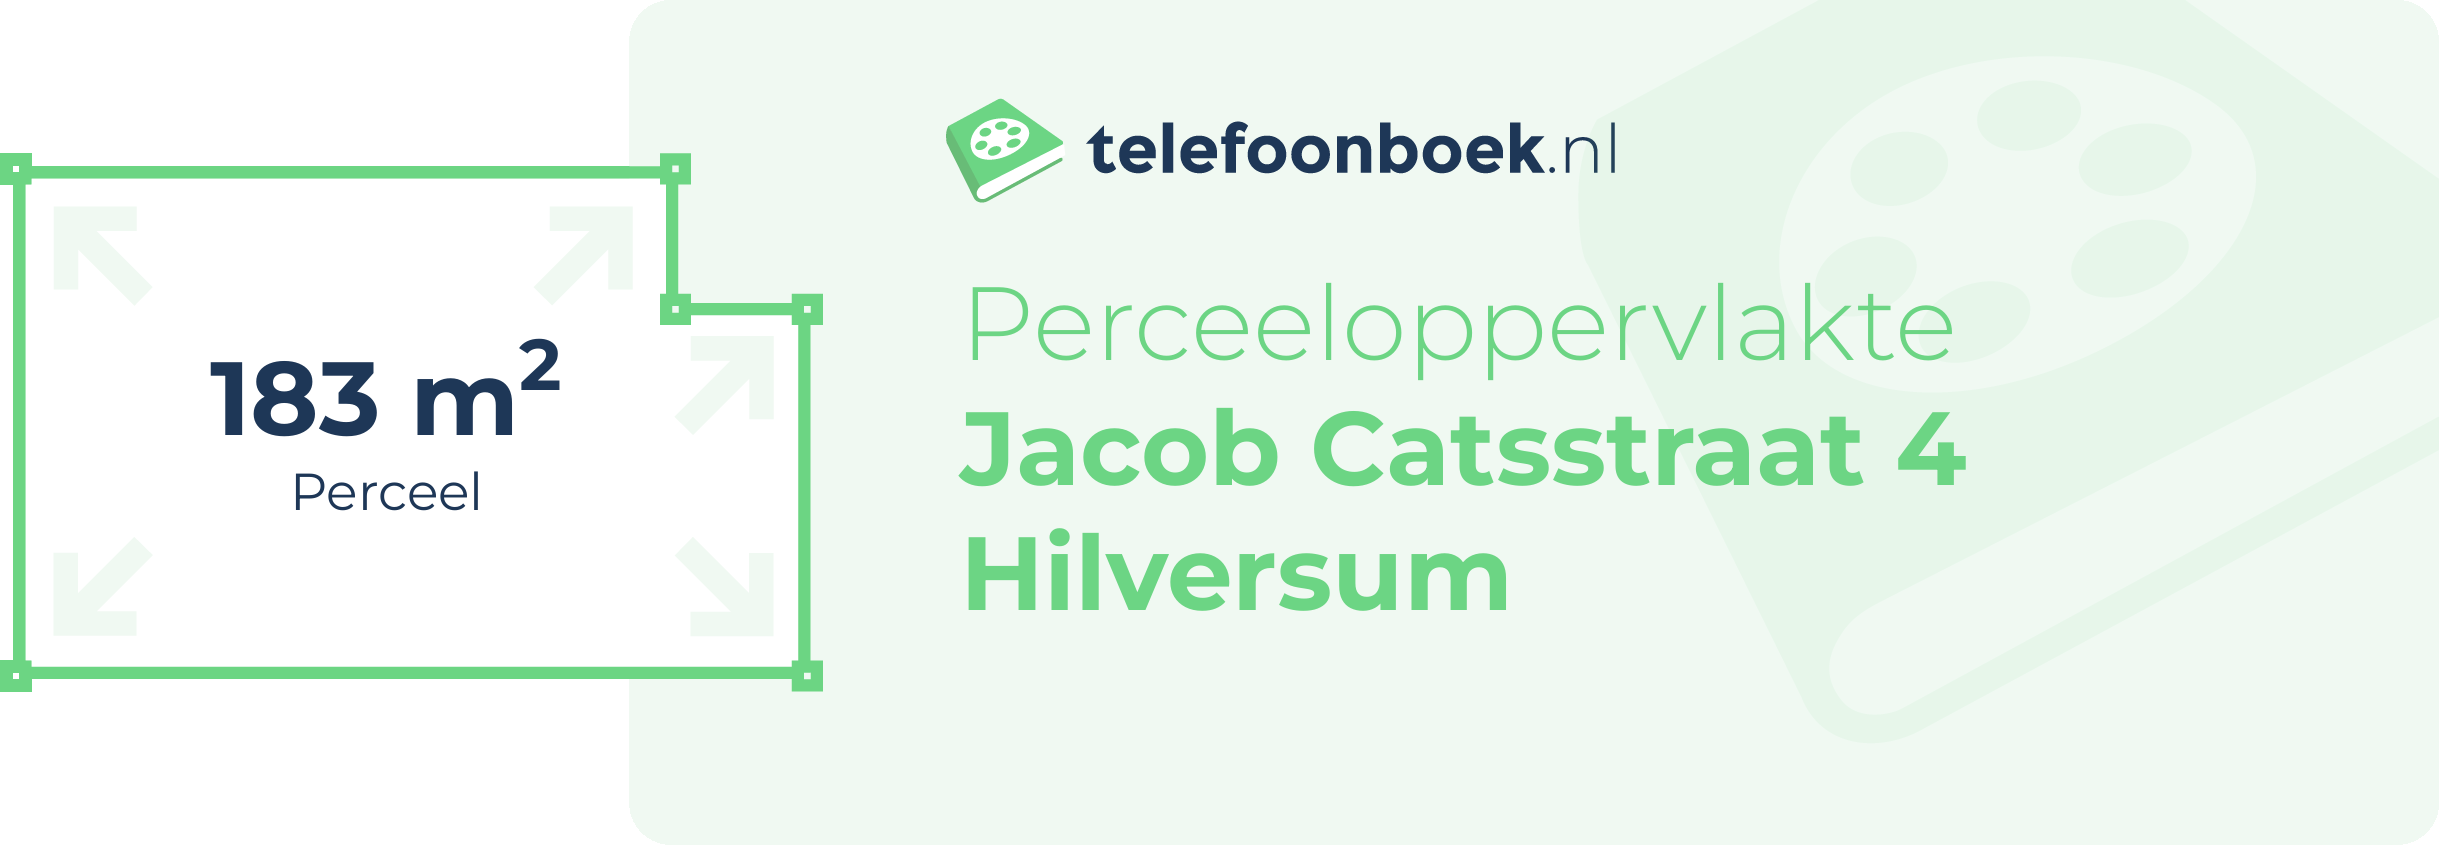 Perceeloppervlakte Jacob Catsstraat 4 Hilversum